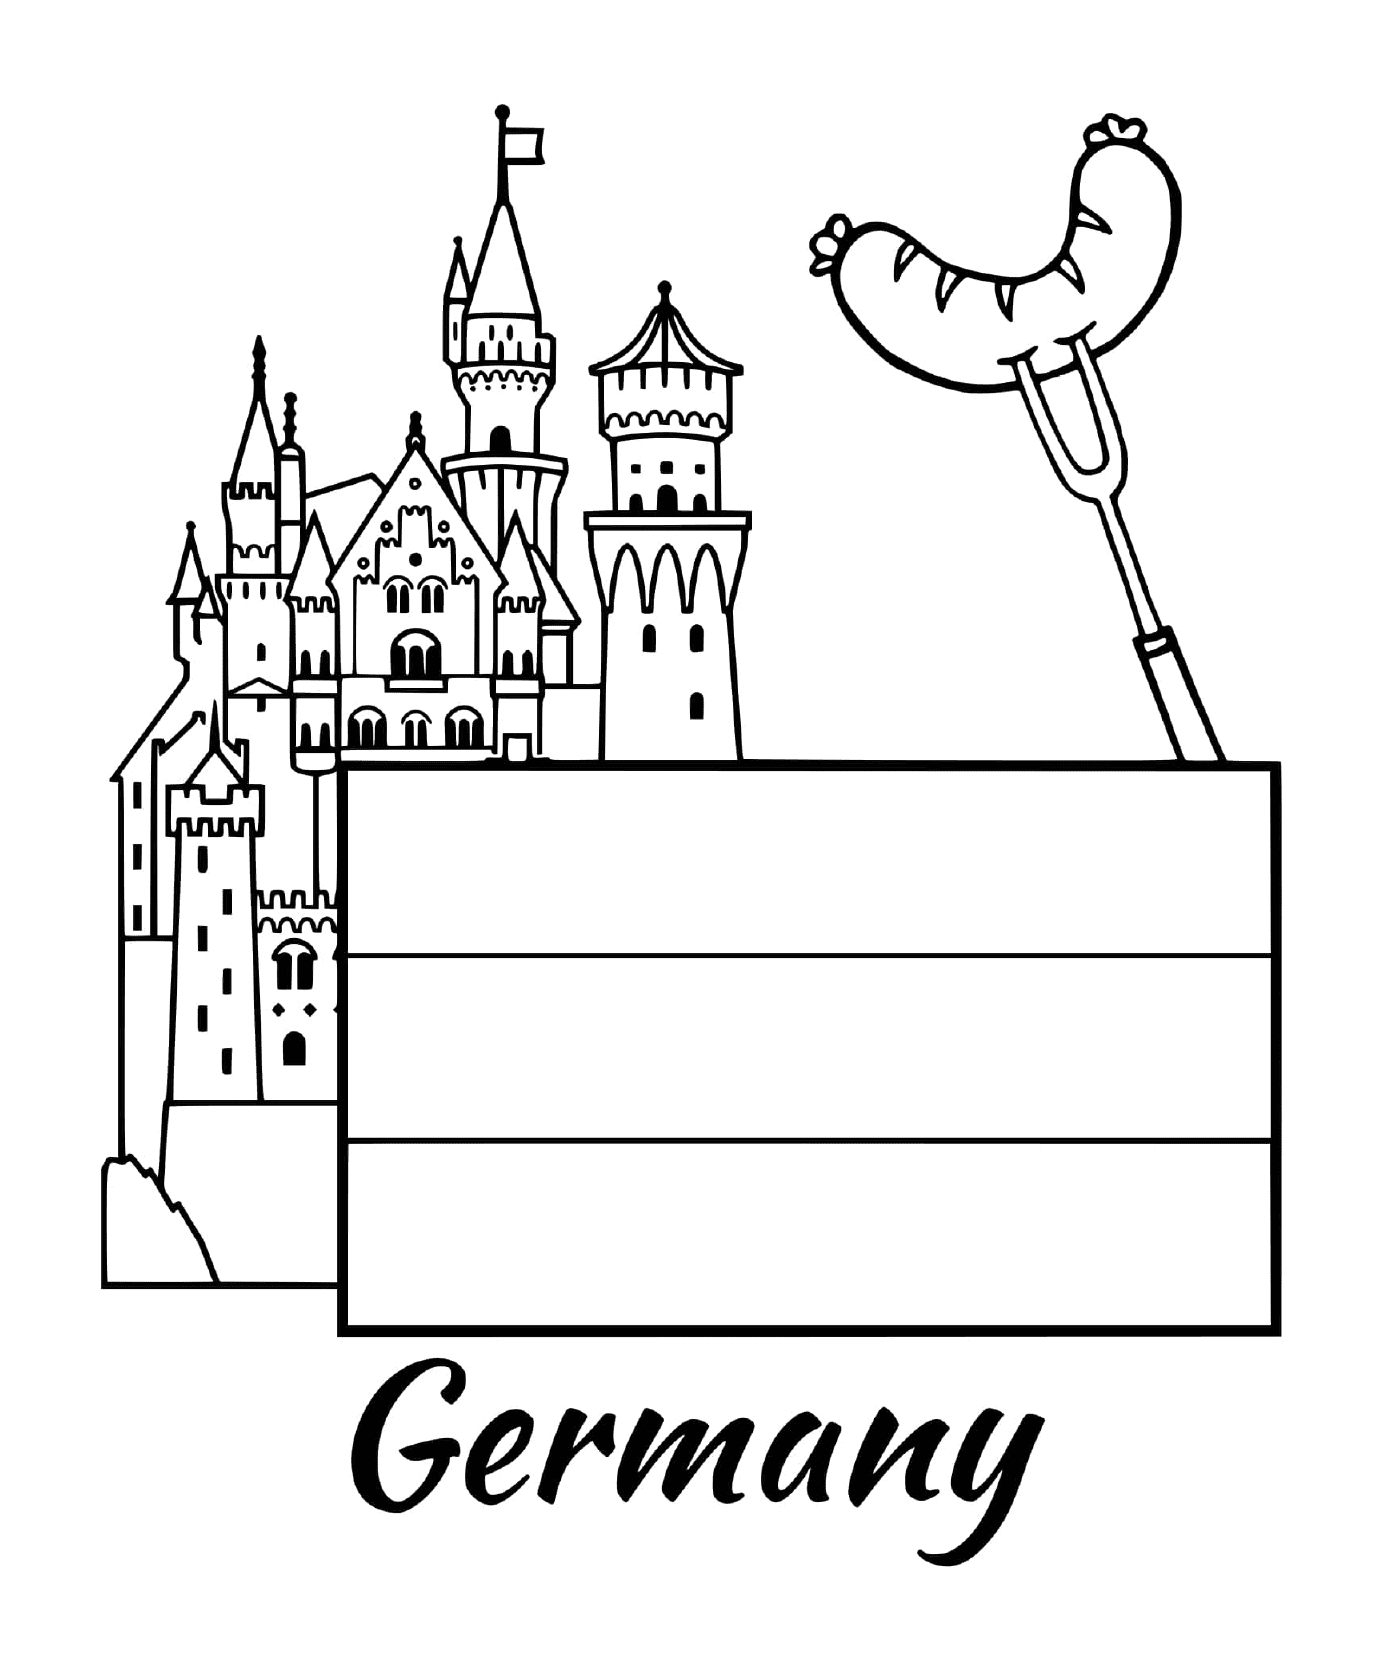  जर्मनी के ध्वज एक महल के साथ 